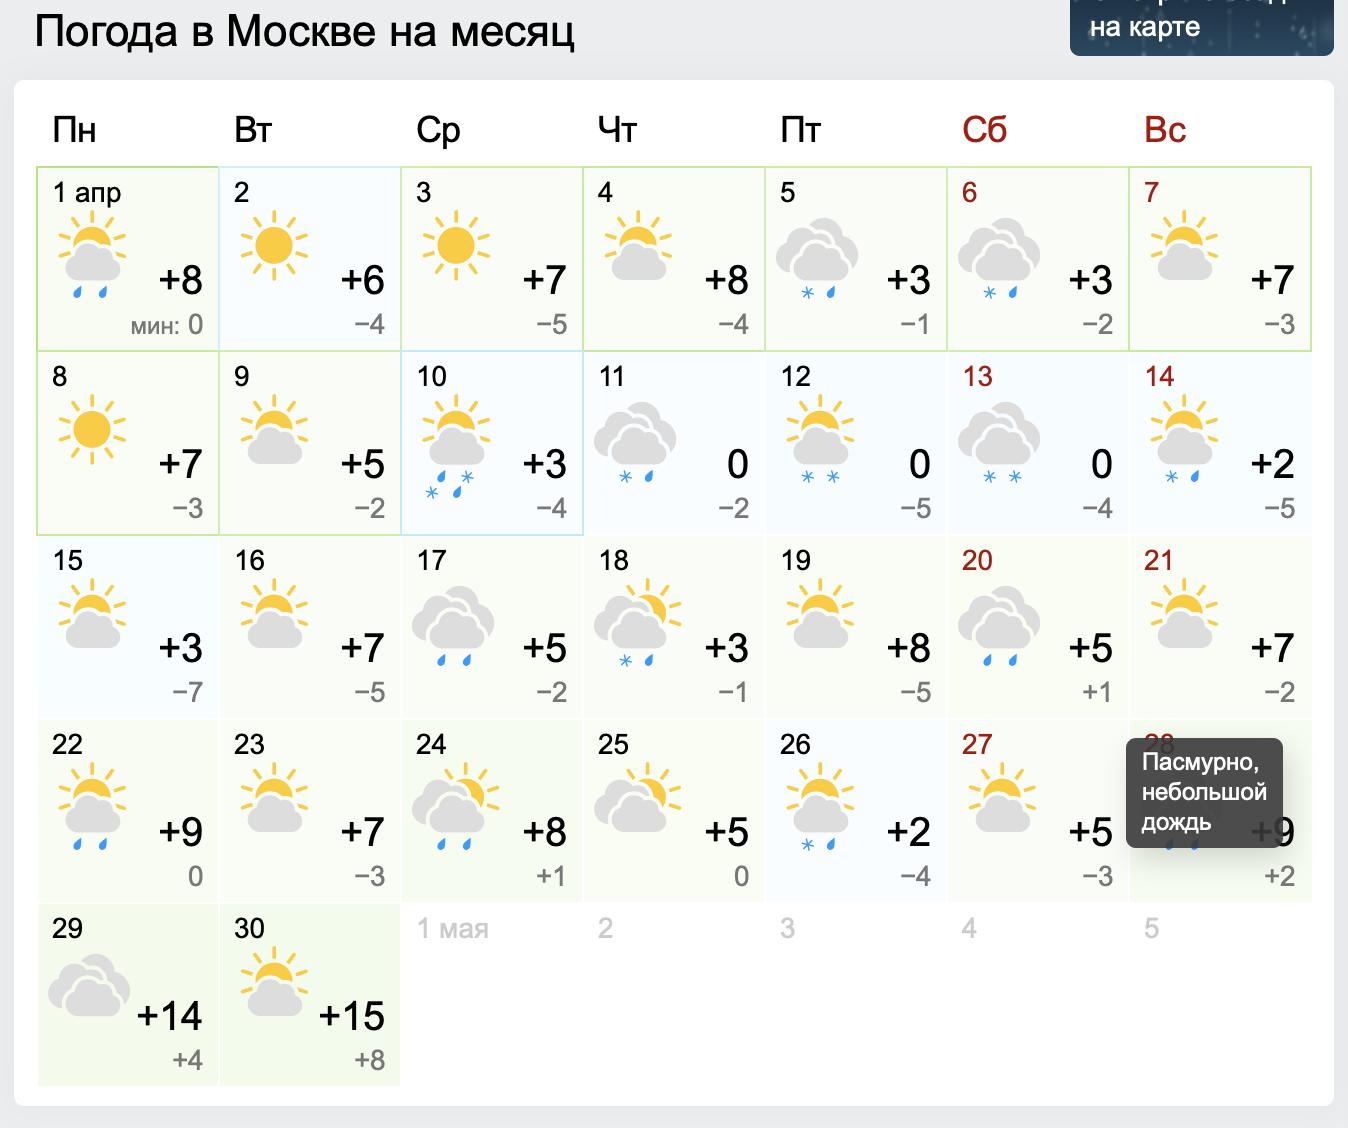 Гидрометцентр погода троицк челябинская область. Погода 1 месяц. Погода в Москве по месяцам.